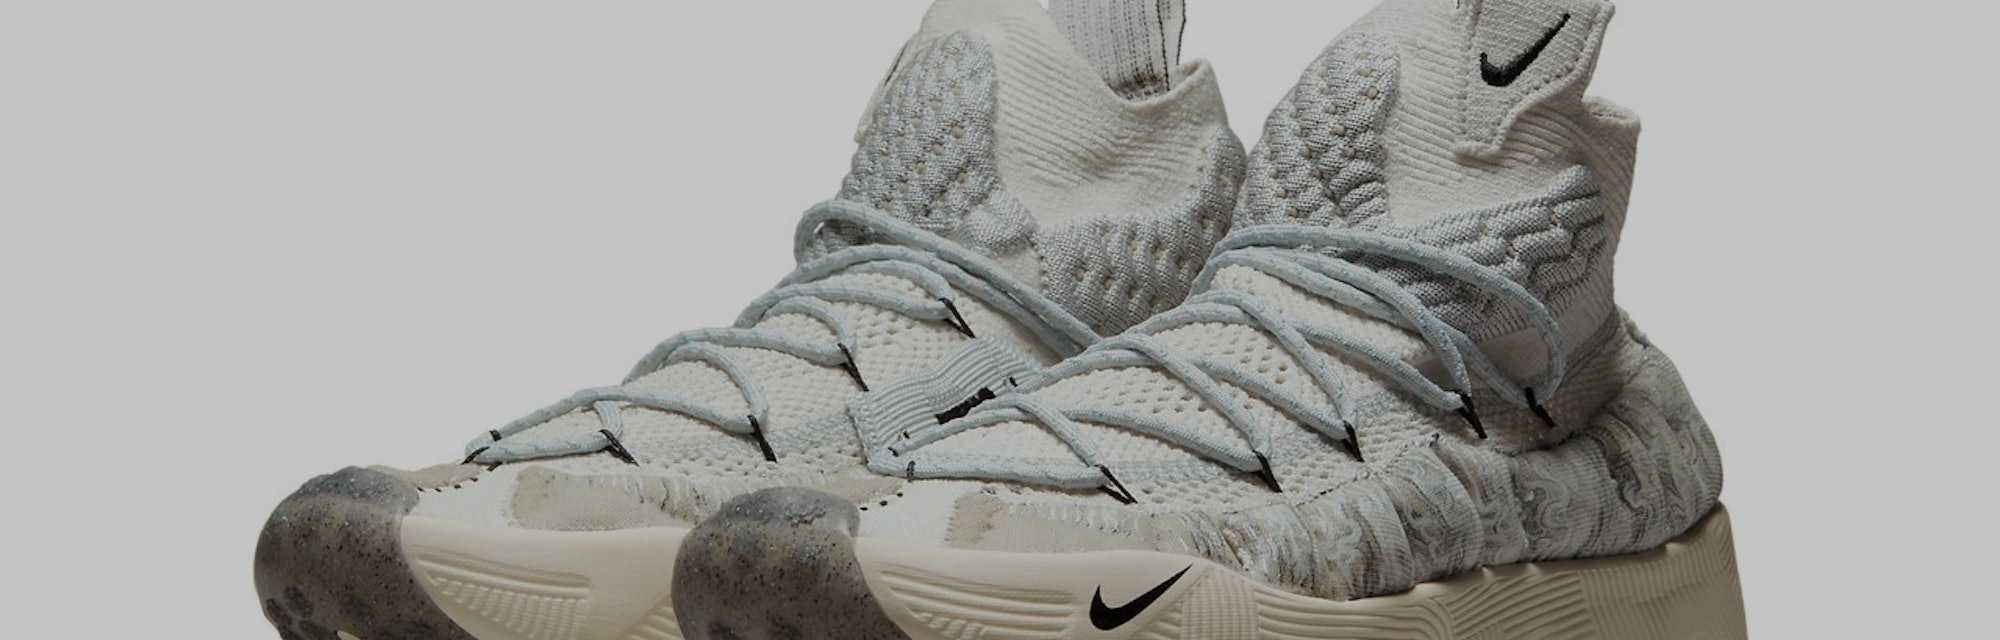 Nike ISPA Sense Flyknit sneaker in "Light Bone"